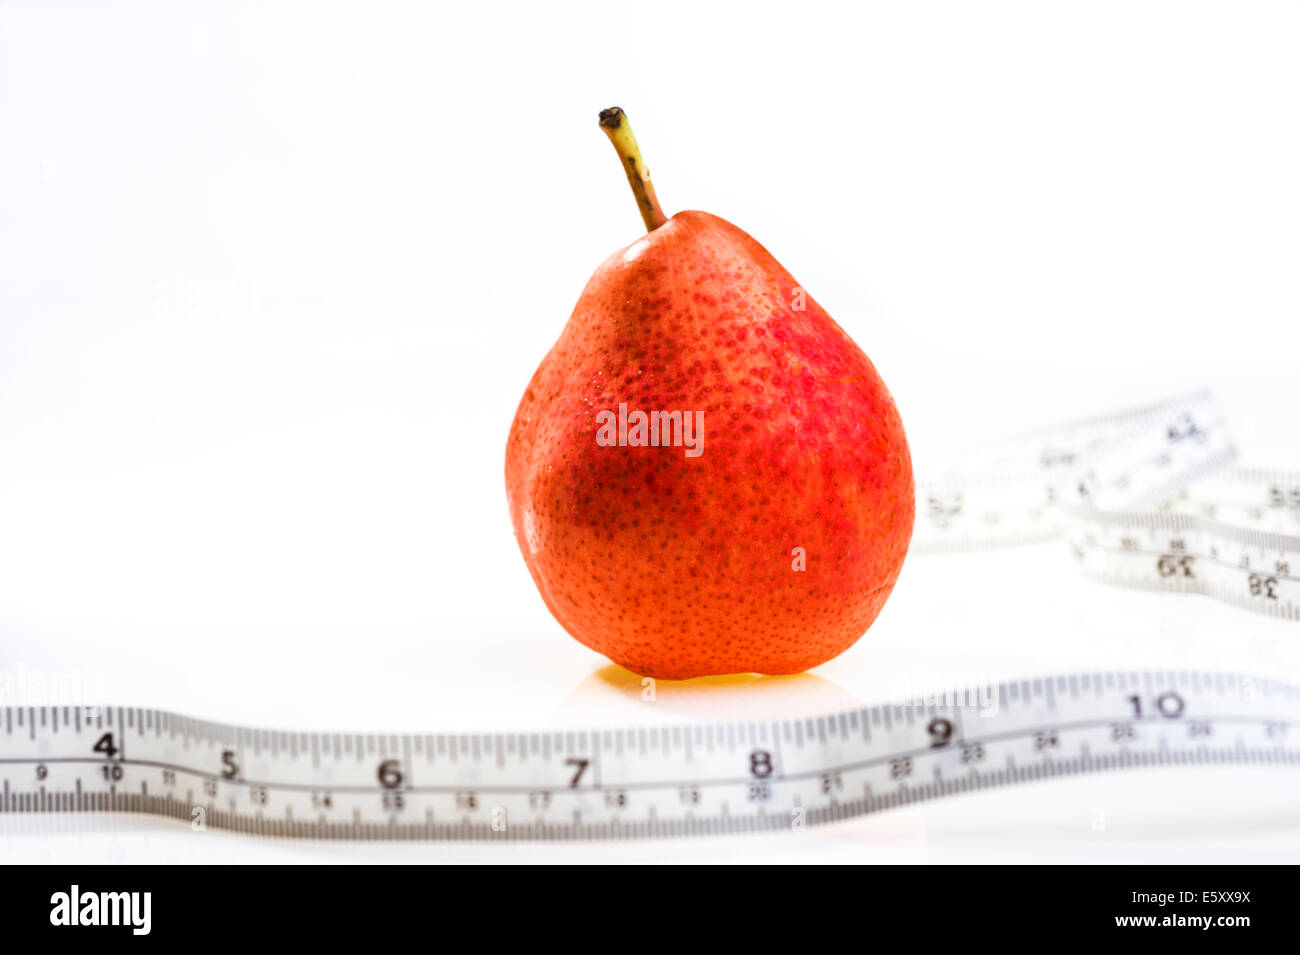 Pera roja con cinta métrica.La obesidad, pérdida de peso, la dieta. Foto de stock